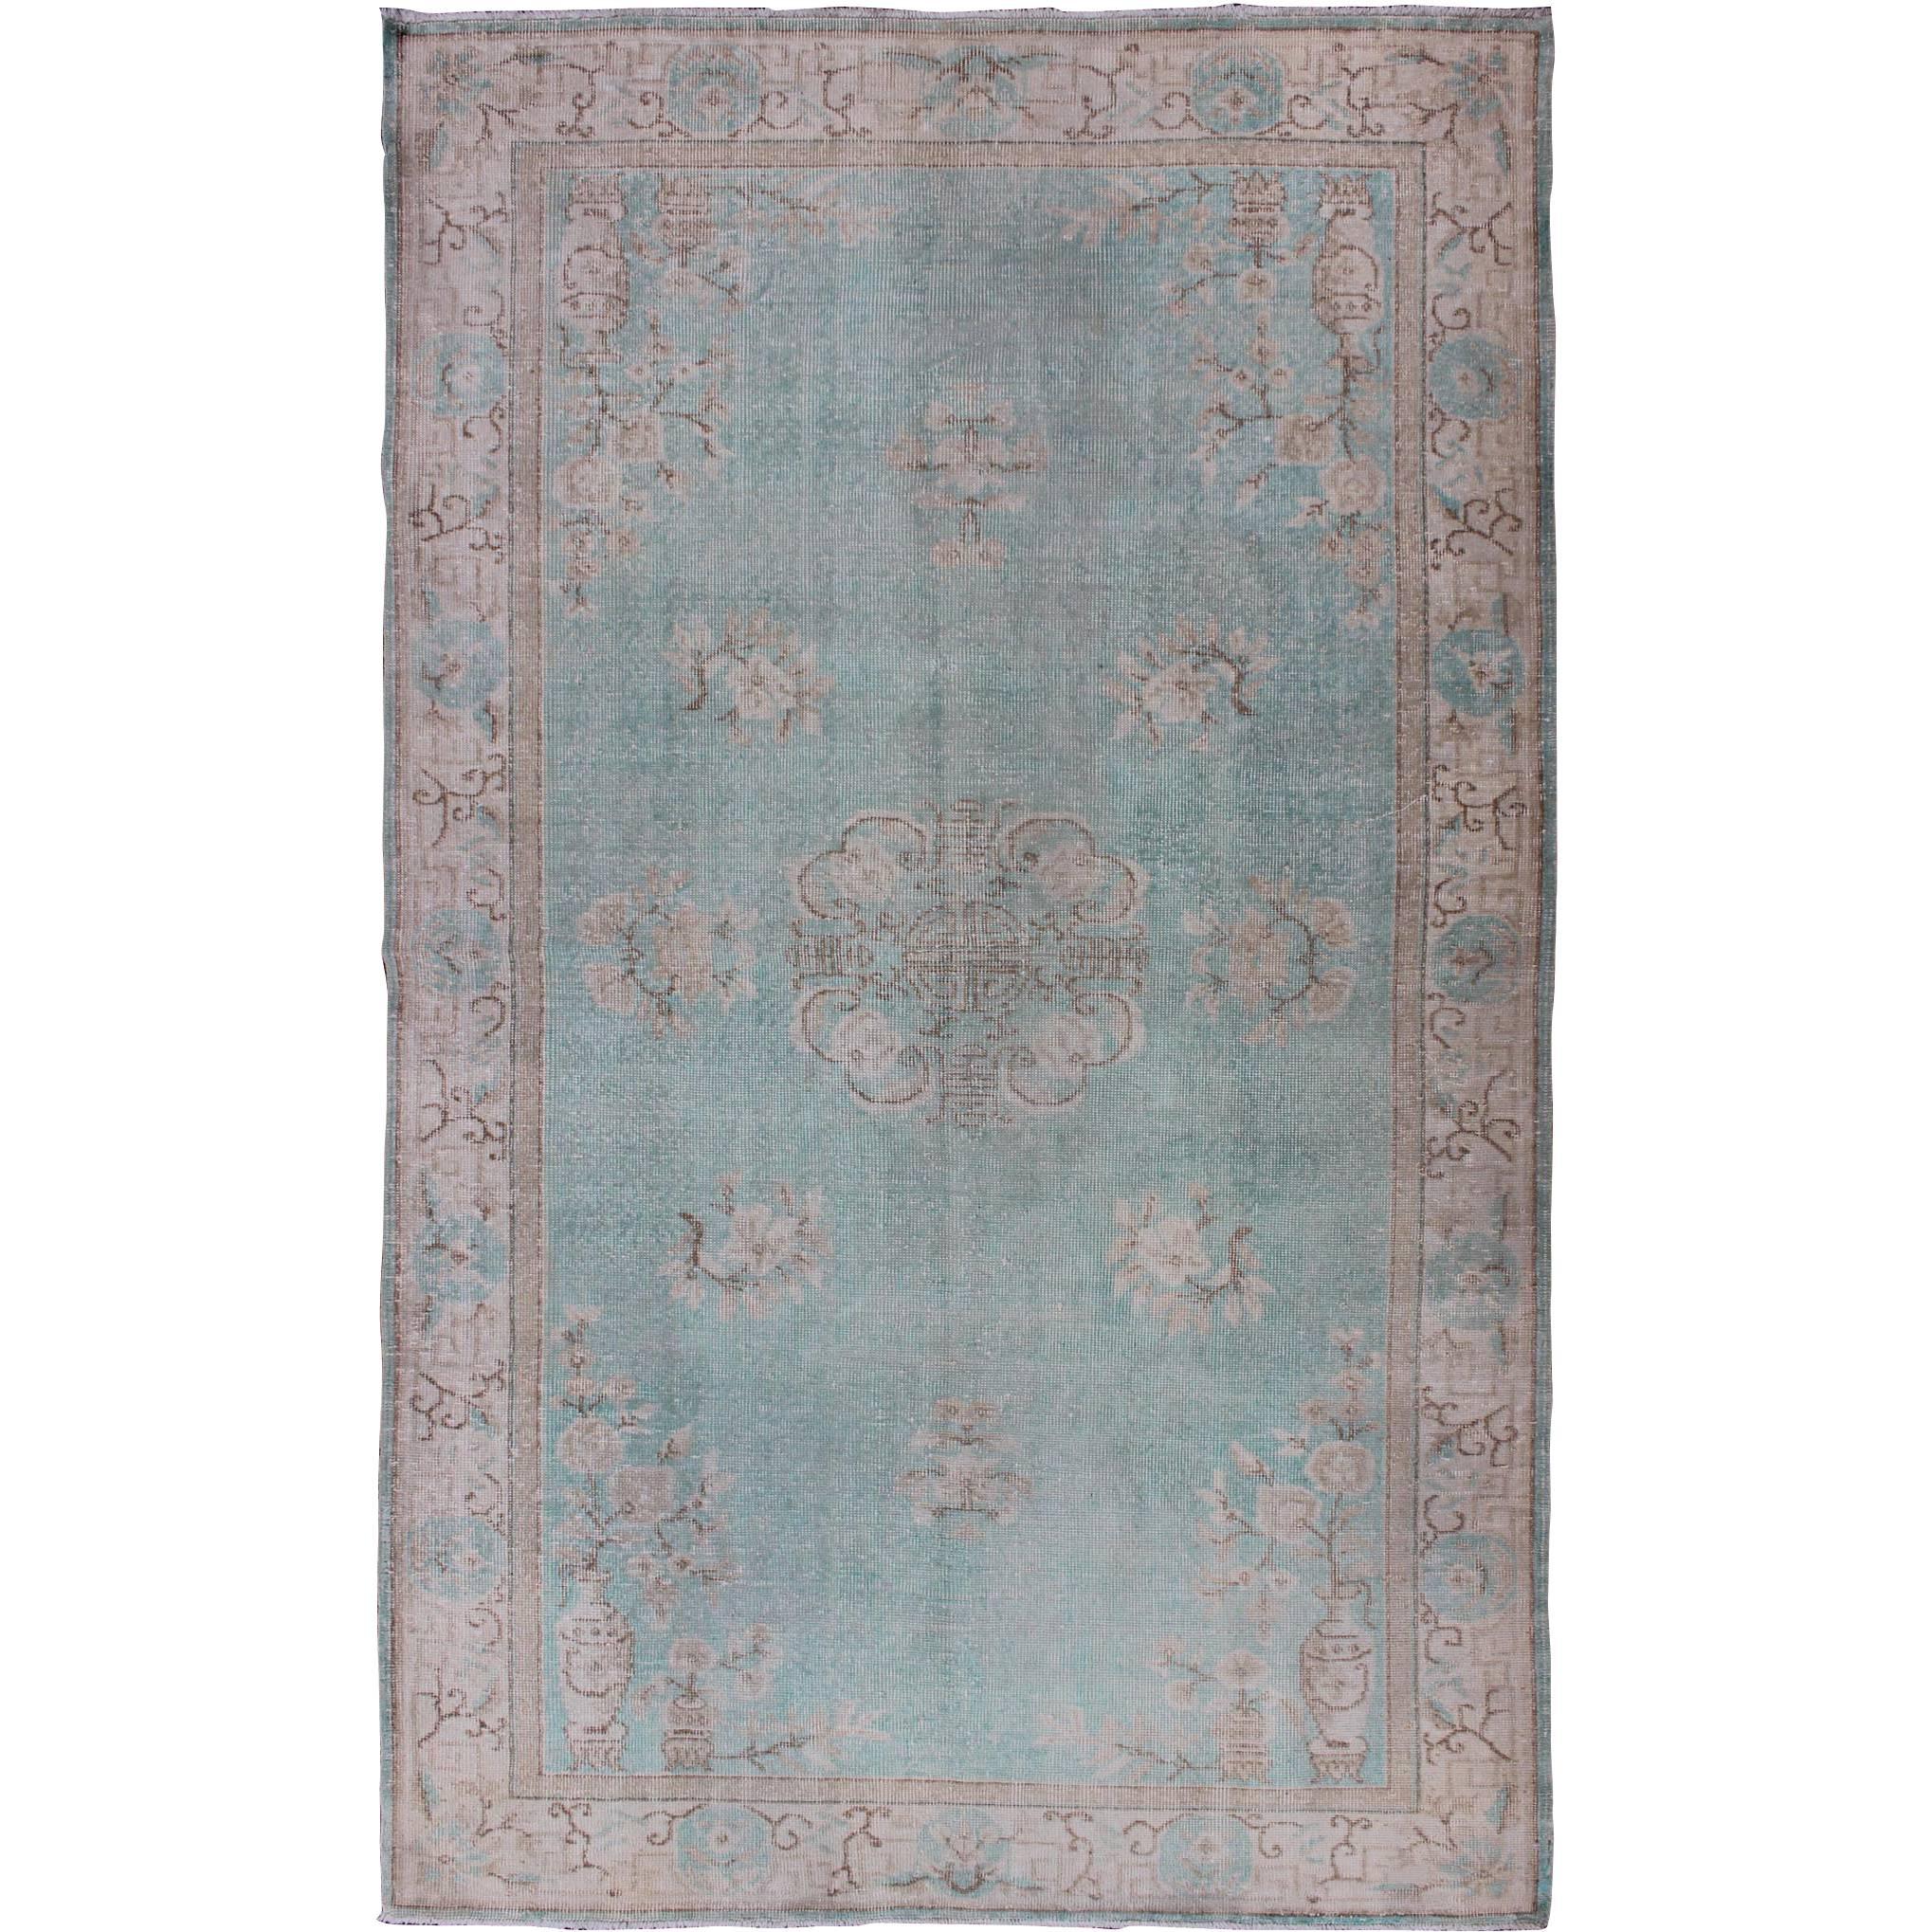 Türkischer Teppich im Vintage-Stil mit Khotan-Design in Meerschaumblau, Taupe und Hellbraun